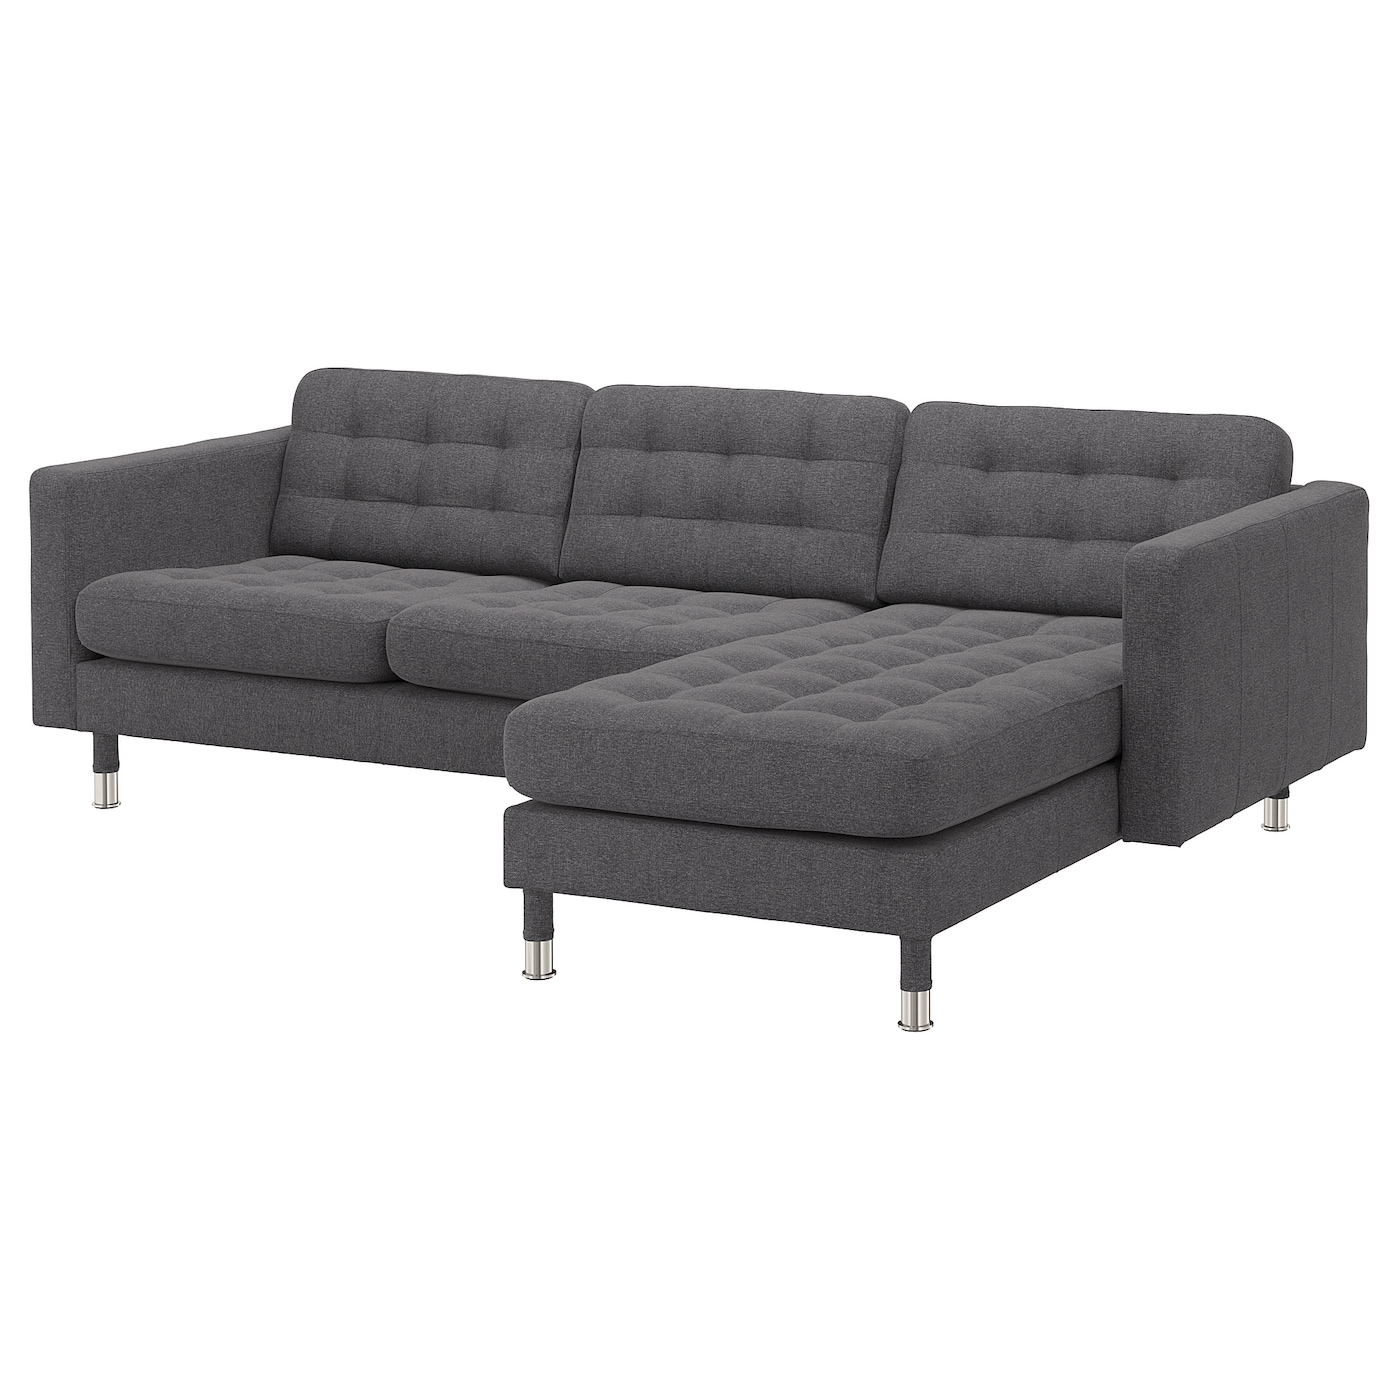 3-местный диван с шезлонгом - IKEA LANDSKRONA, 89x240см, темно-серый/серебристый, ЛАНДСКРУНА ИКЕА